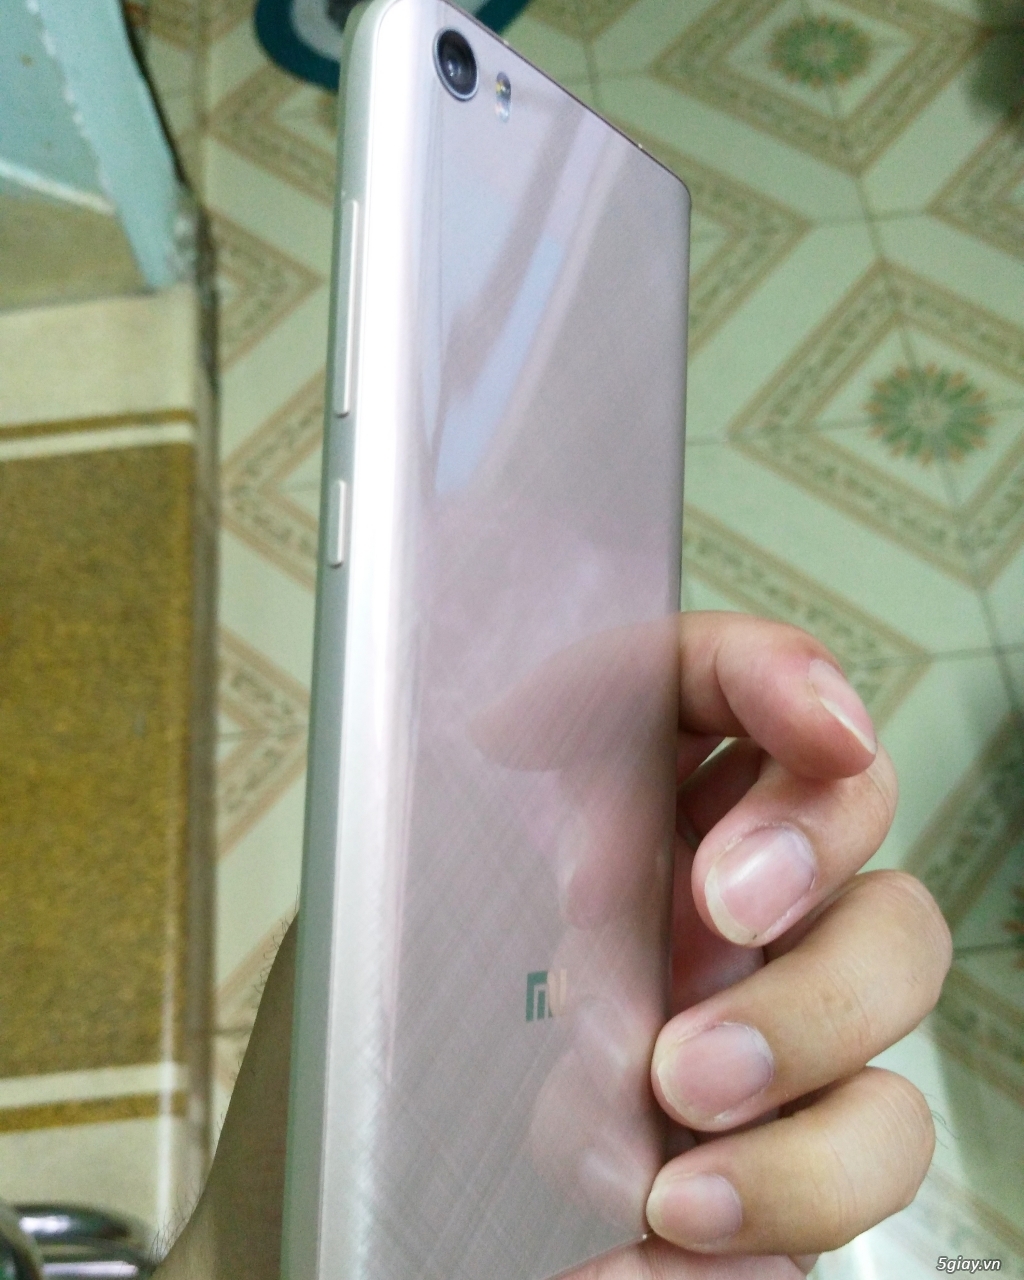 Tiễn 1e Xiaomi Mi5 Hồng (Hàng FPT) Fullbox 100% mua ngày 01/08/2016 - 1